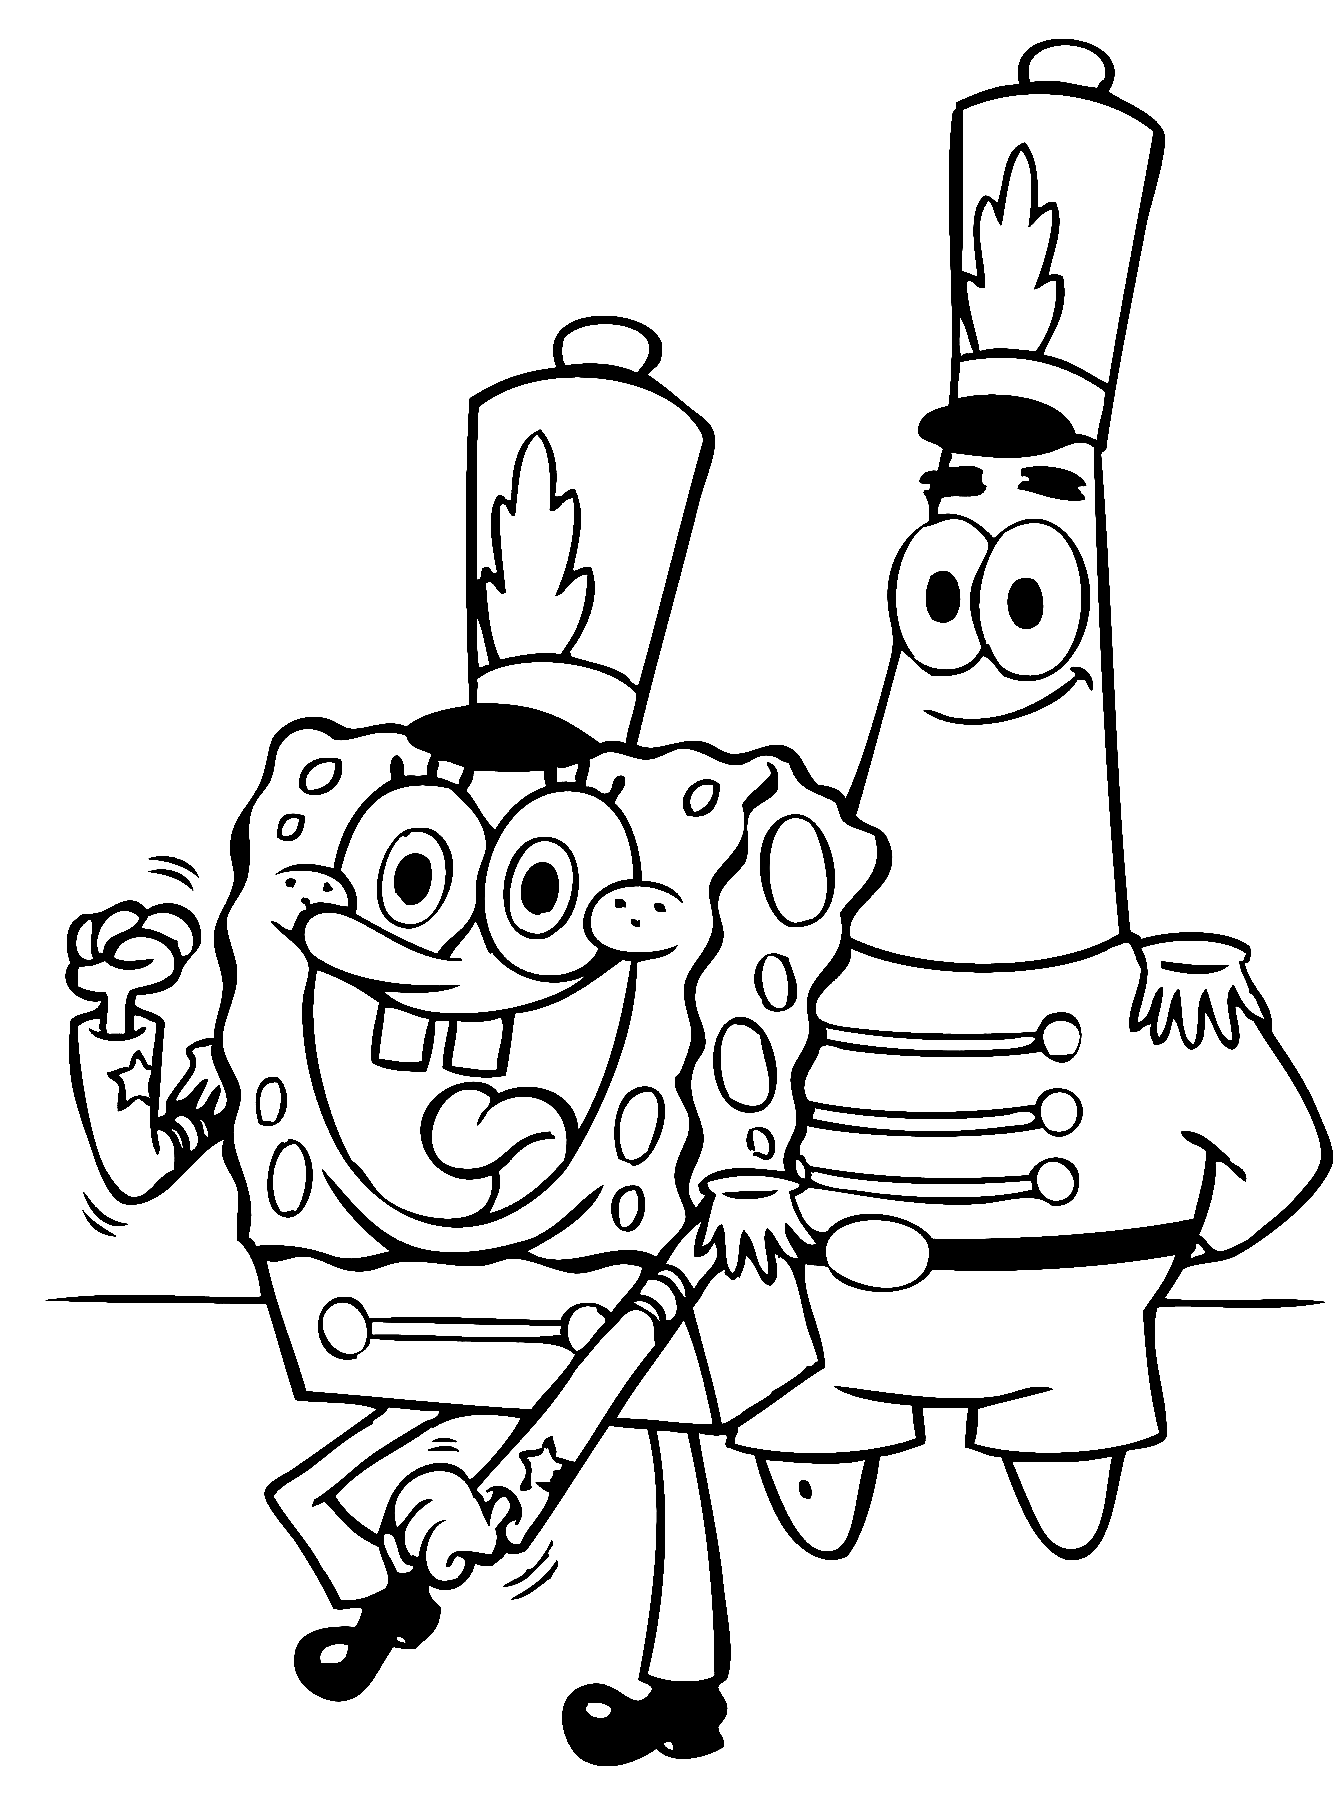 Pagina da colorare di Patrick e Spongebob